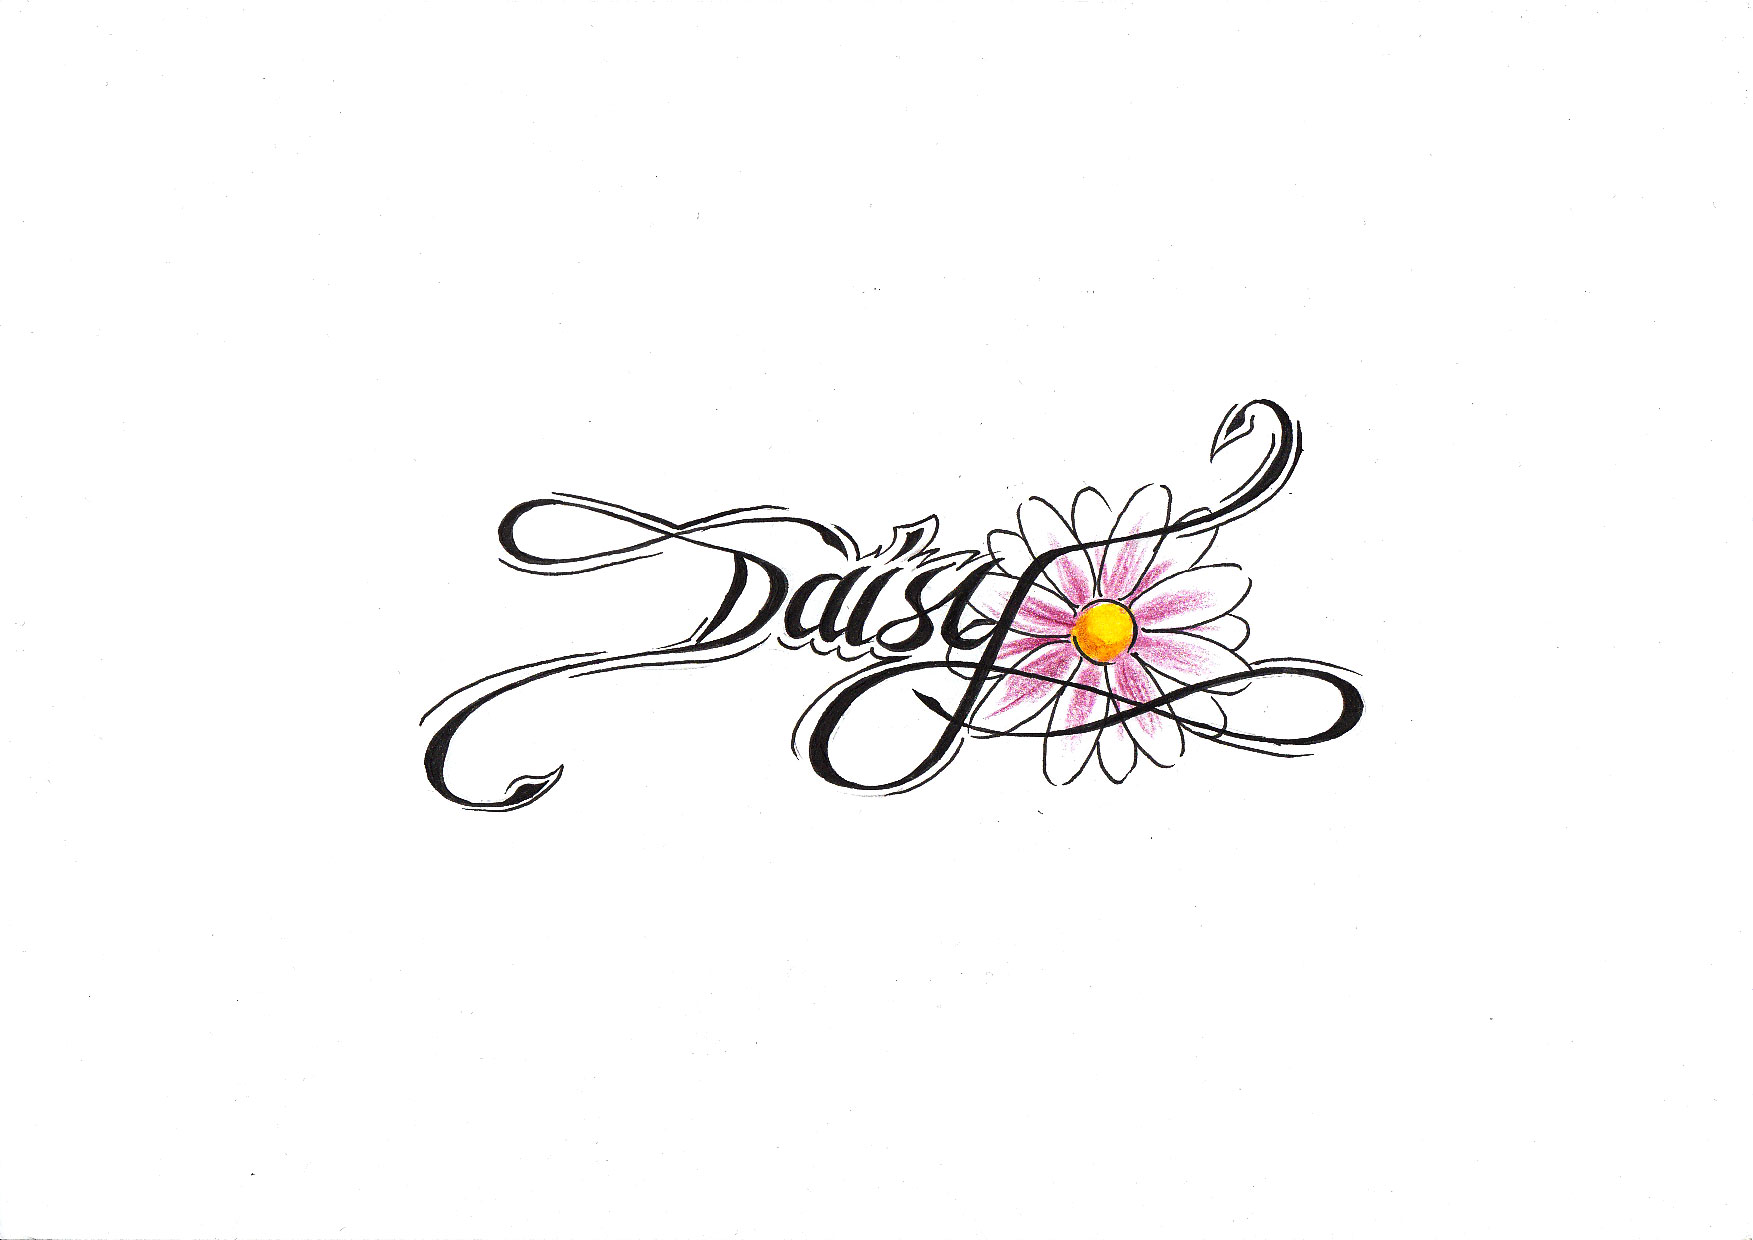 Daisy+flower+tattoos+for+girls